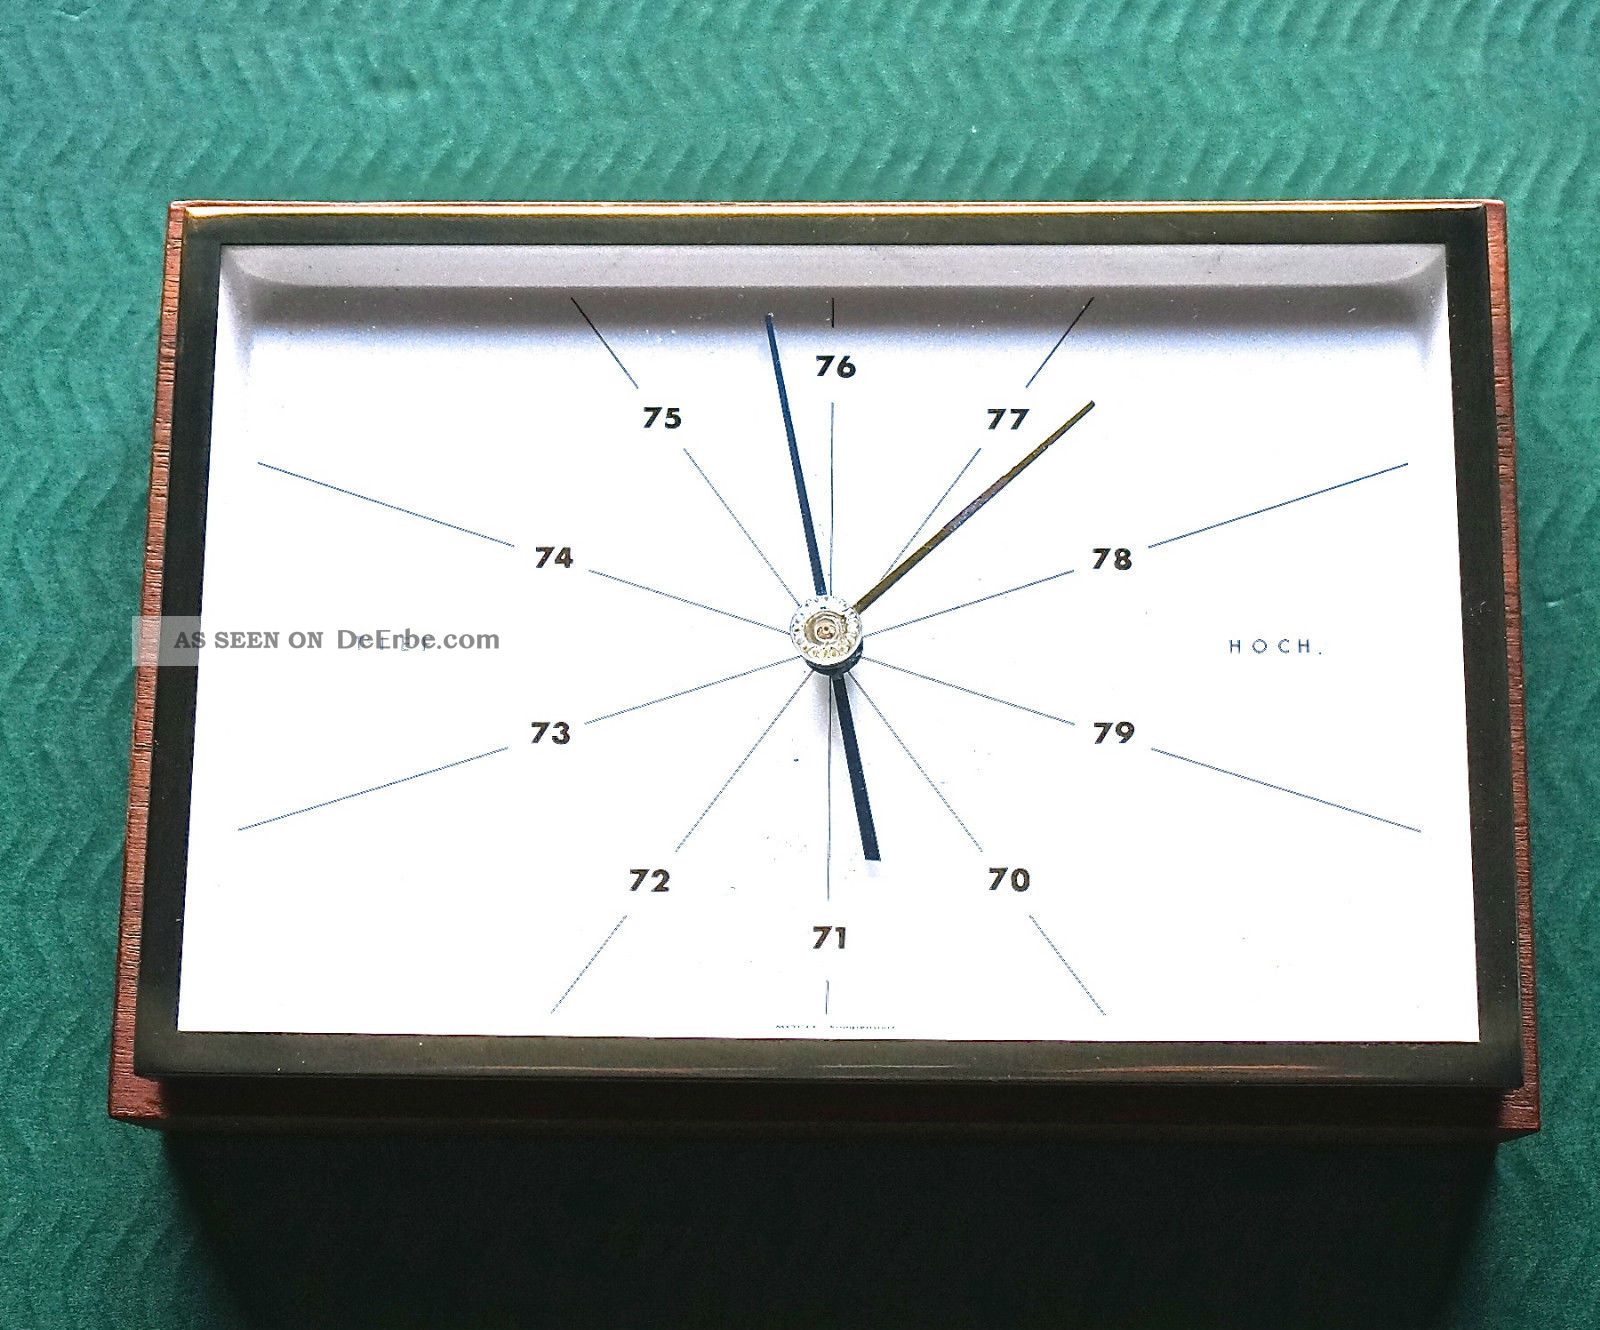 Altes Barometer Von Moco Kompensiert Wettergeräte Bild